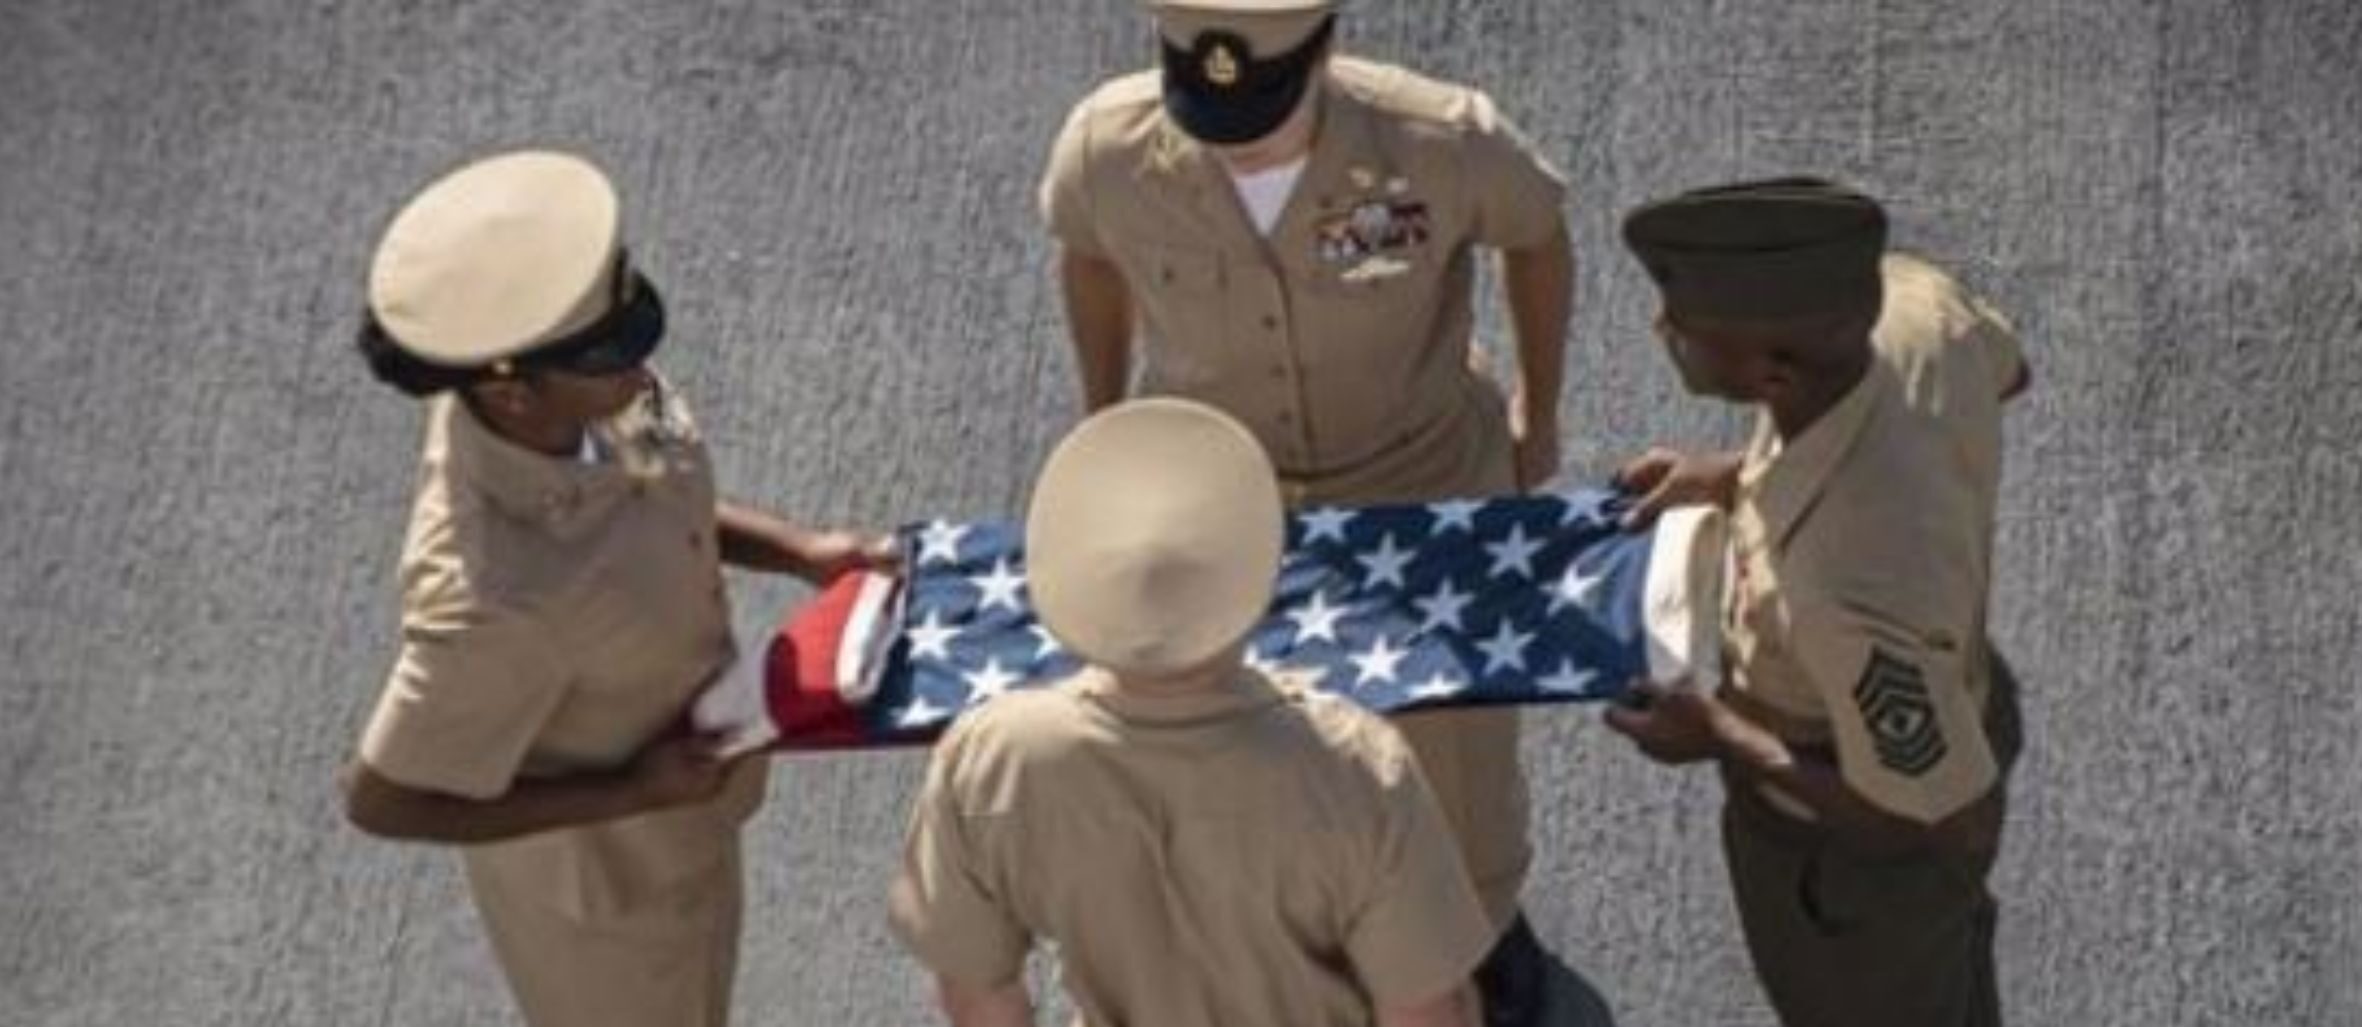 Soldats estatunidencs en una cerimònia en record a les víctimes